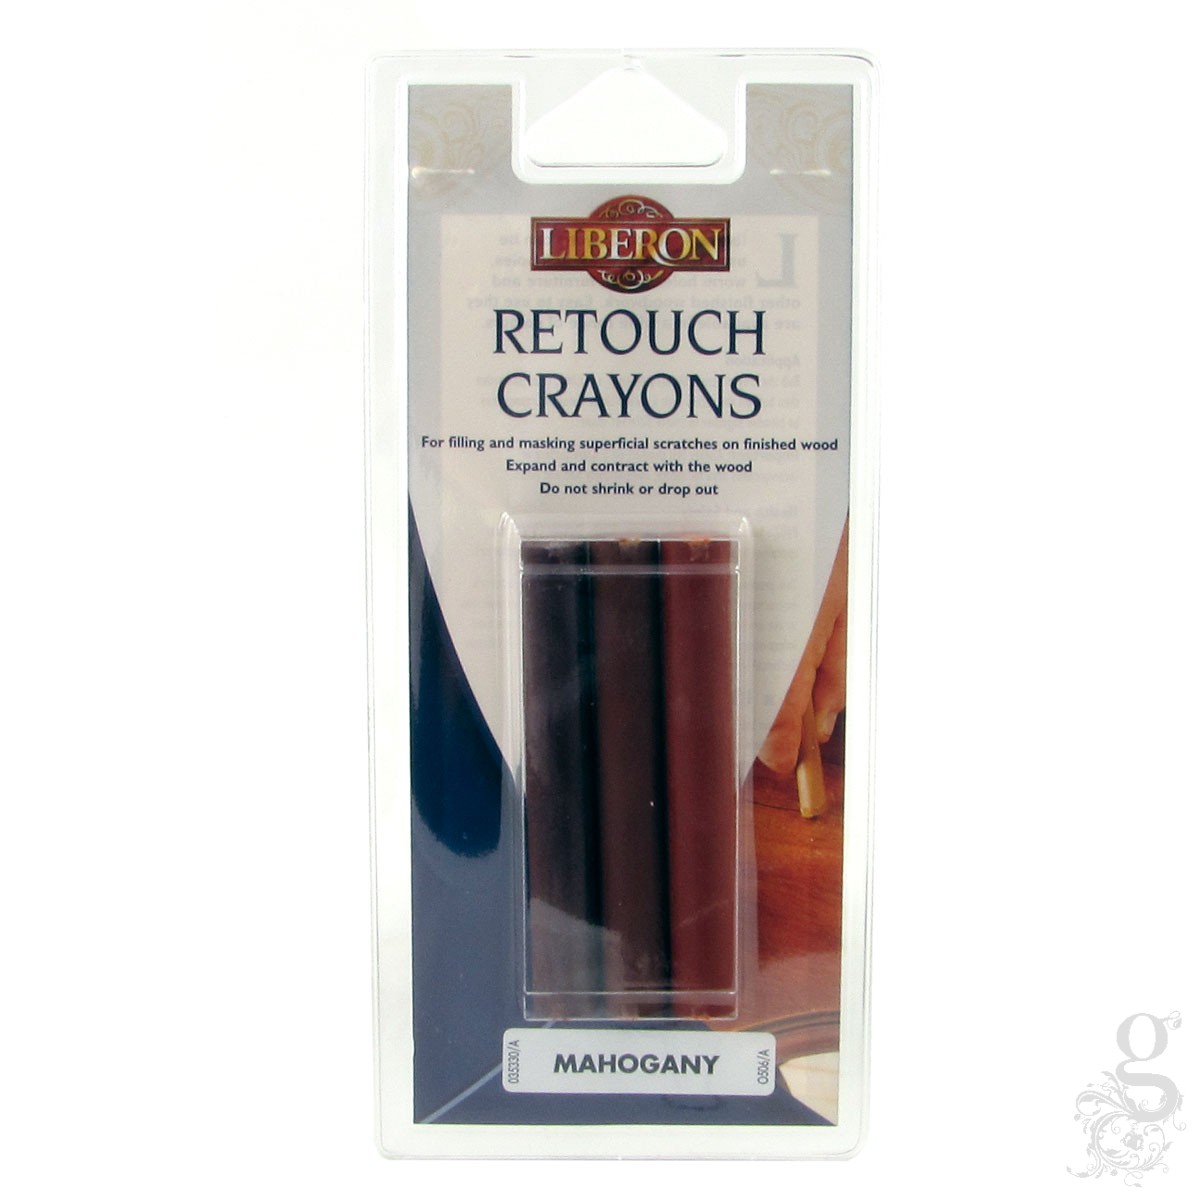 Liberon Retouch Crayons 3 Pack Mahogany